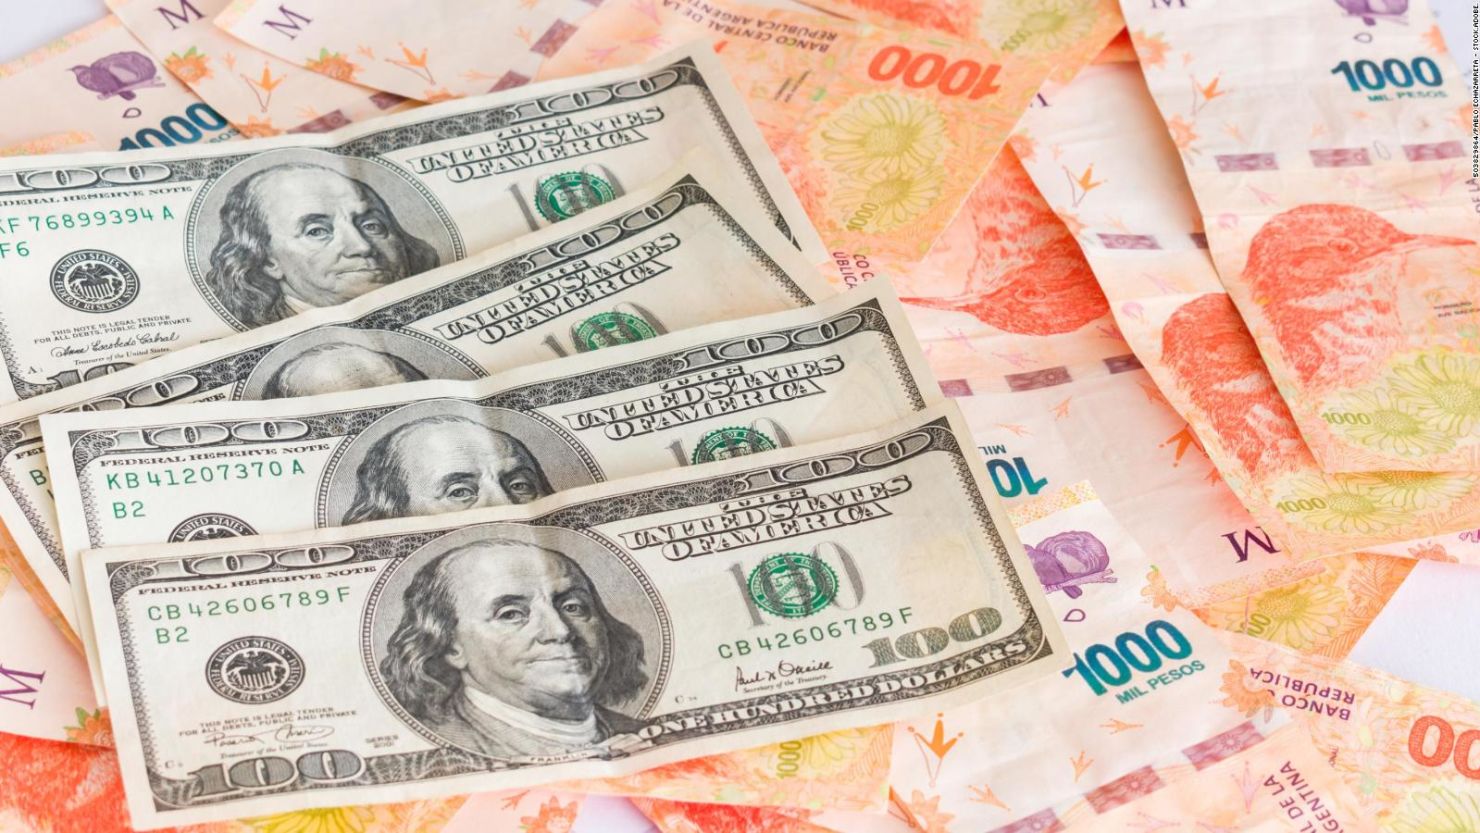 CNNE 1281148 - ¿como afecta a la economia argentina tener tantos tipos de dolar?